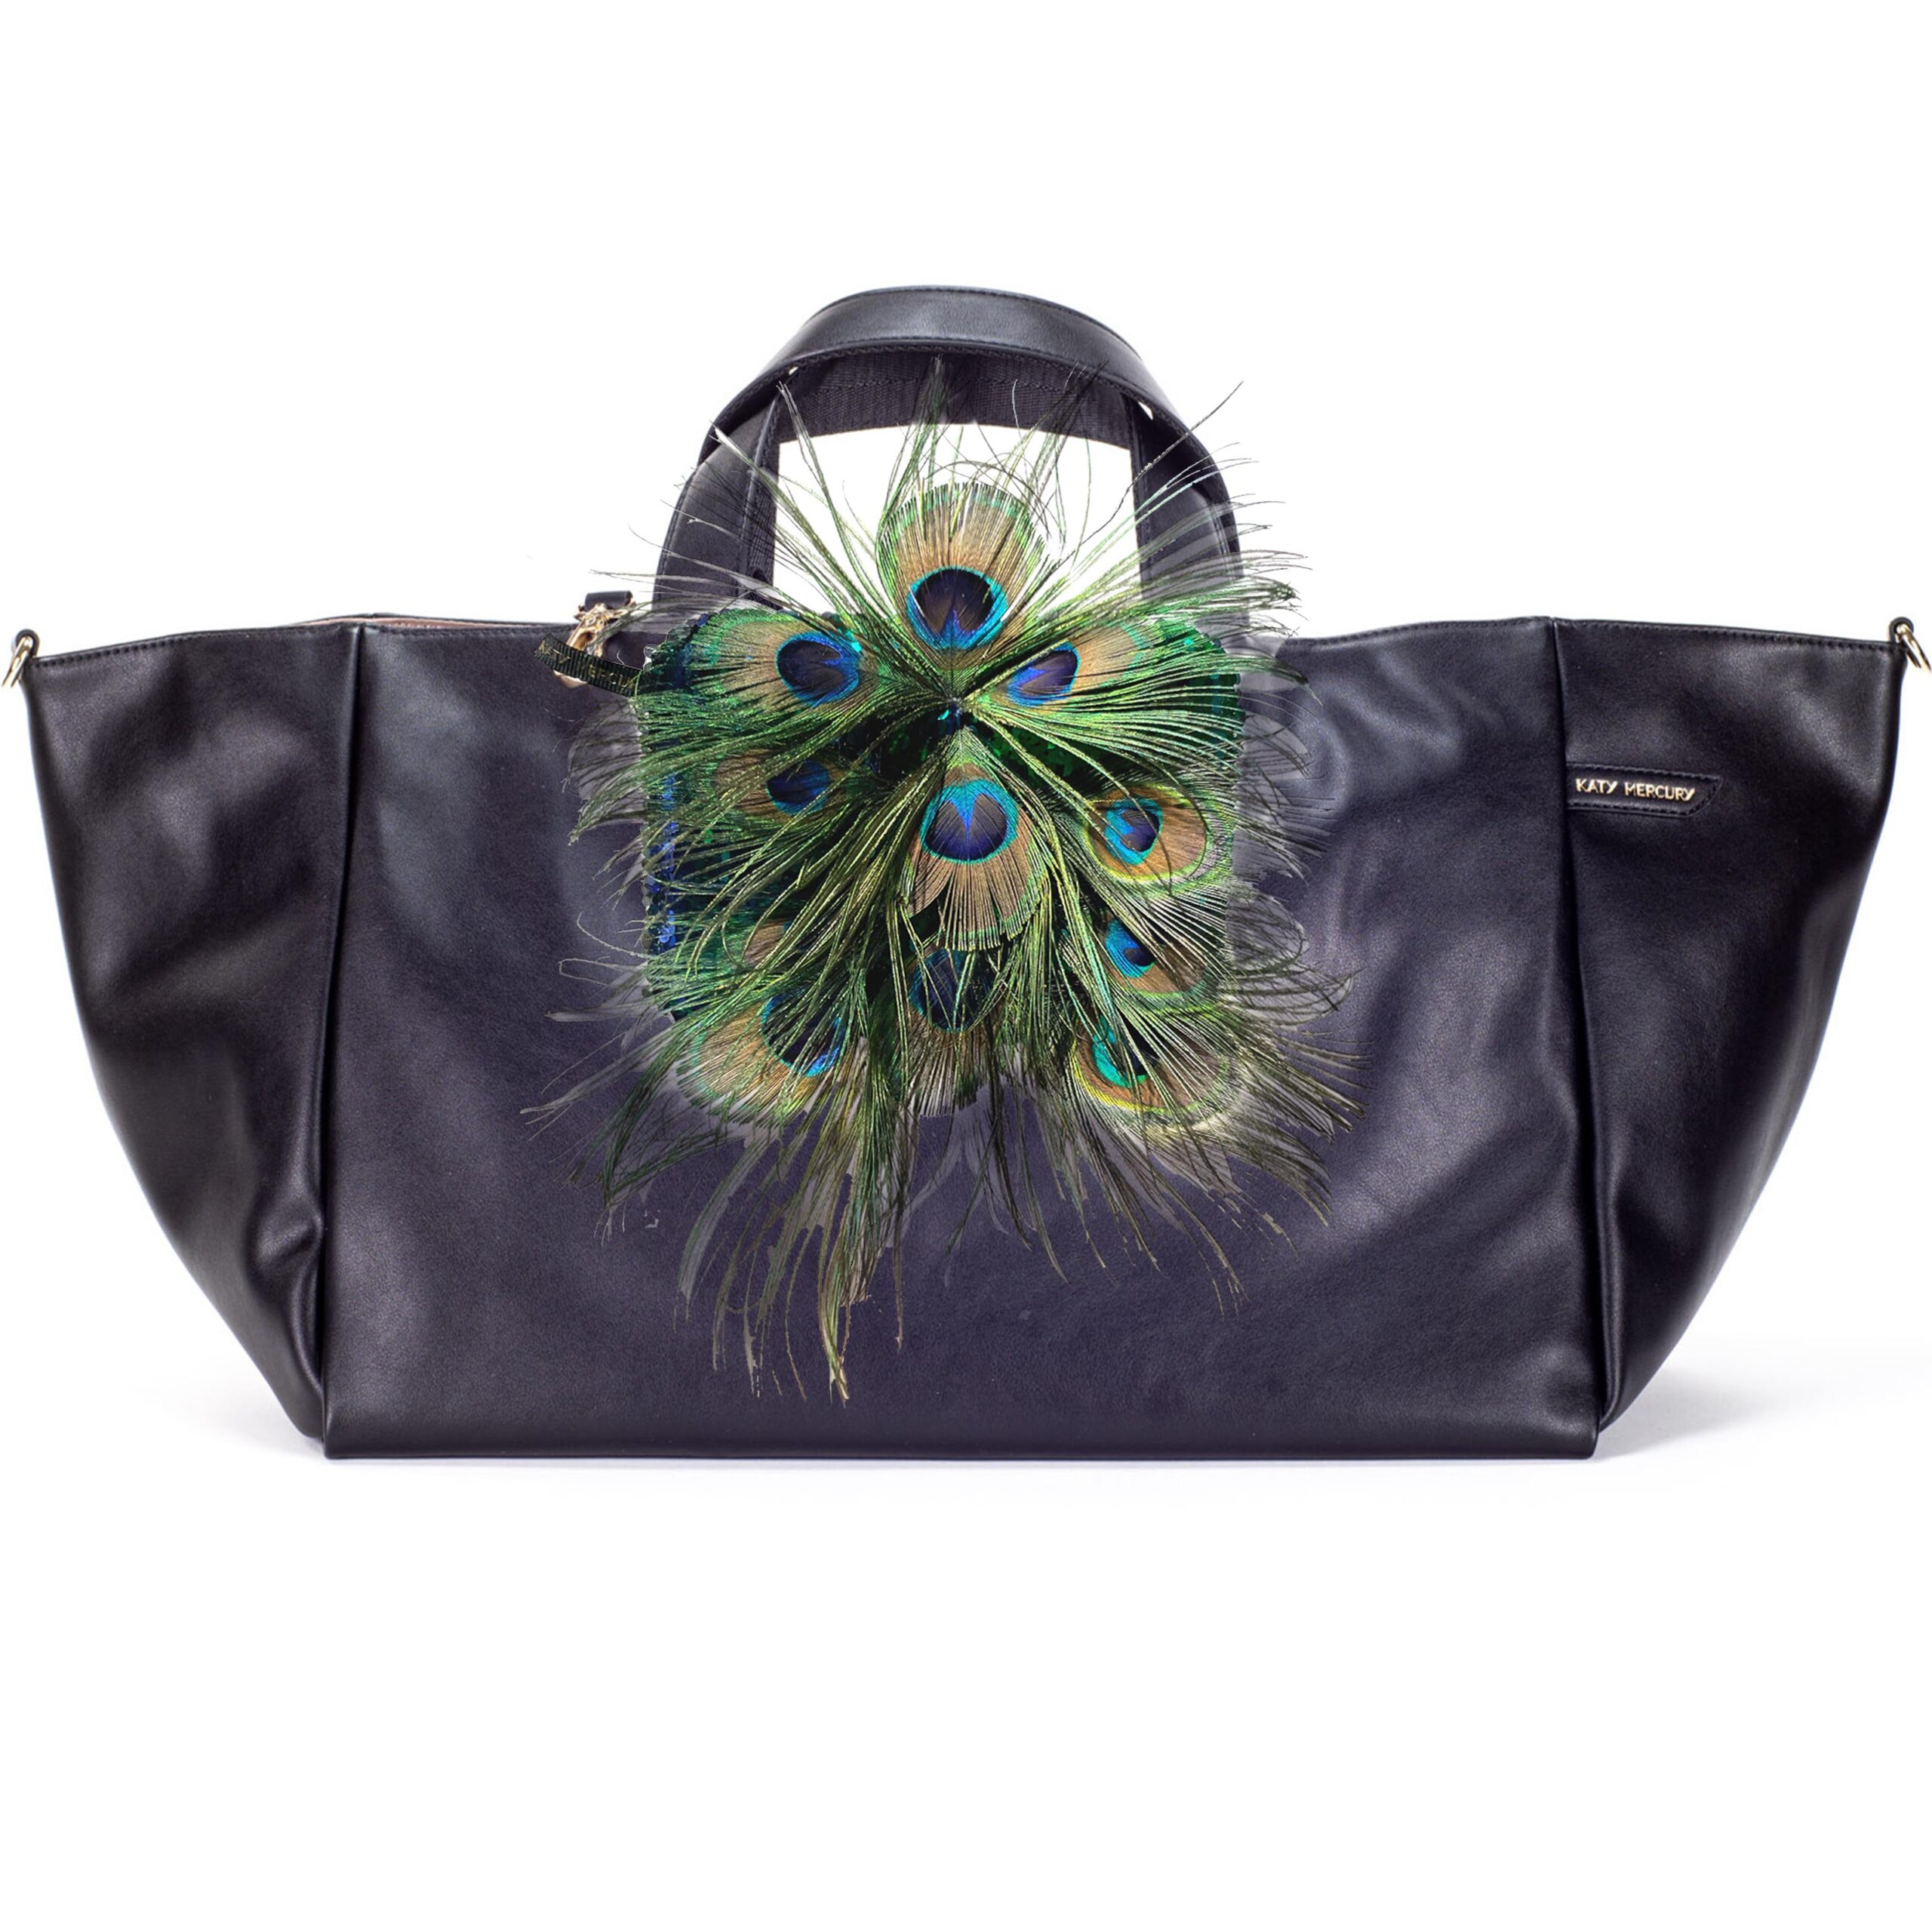 Pfauenfeder StyleCOVER auf WendeSHOPPER und Clutch mit Pfauenfedern SCHWARZ Peacock feathers for KATY MERCURY Bags wandelbare Handtaschen